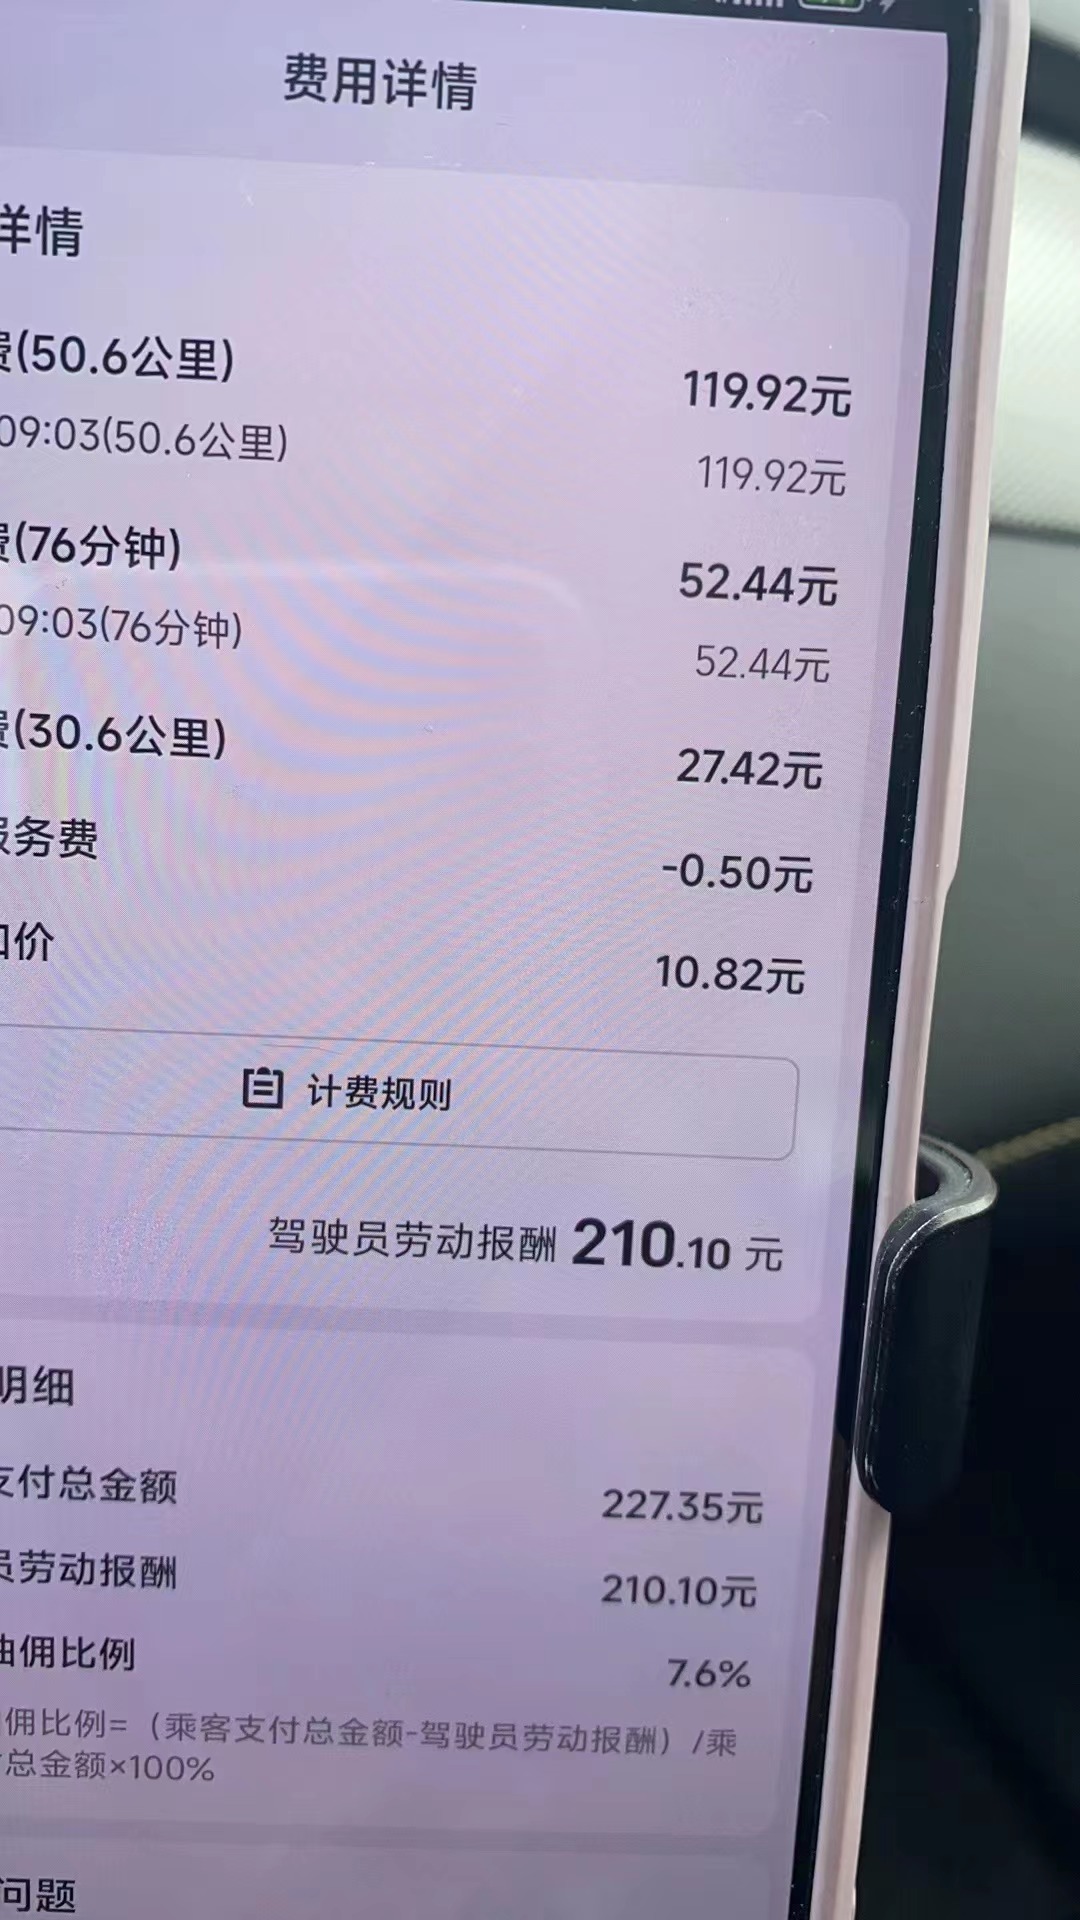 主变量上海都有哪些网约车平台便民消息